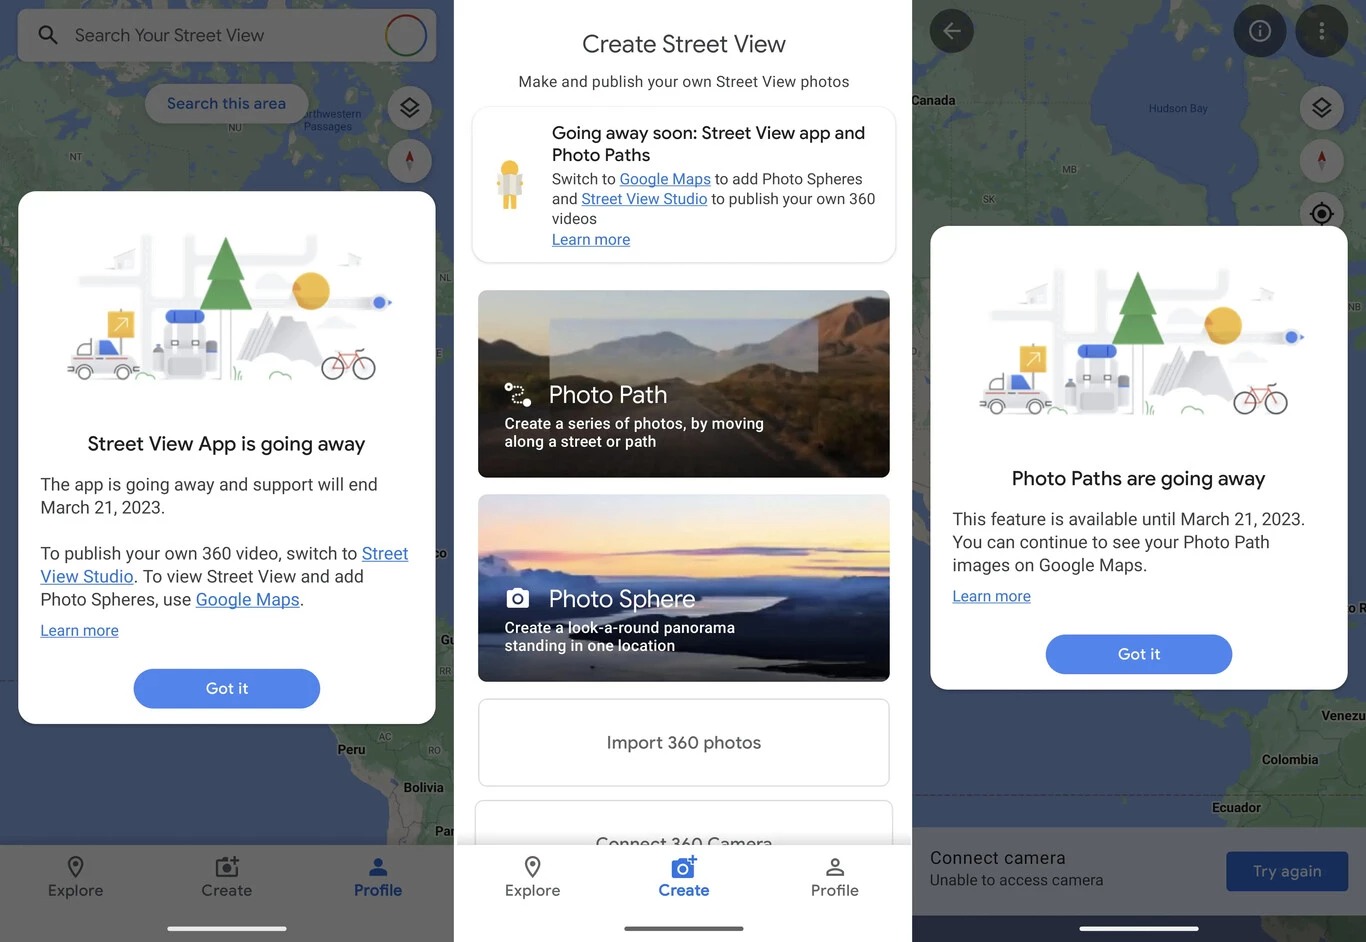 Il supporto per l'app mobile Google Street View terminerà nel 2023. (9to5Google)